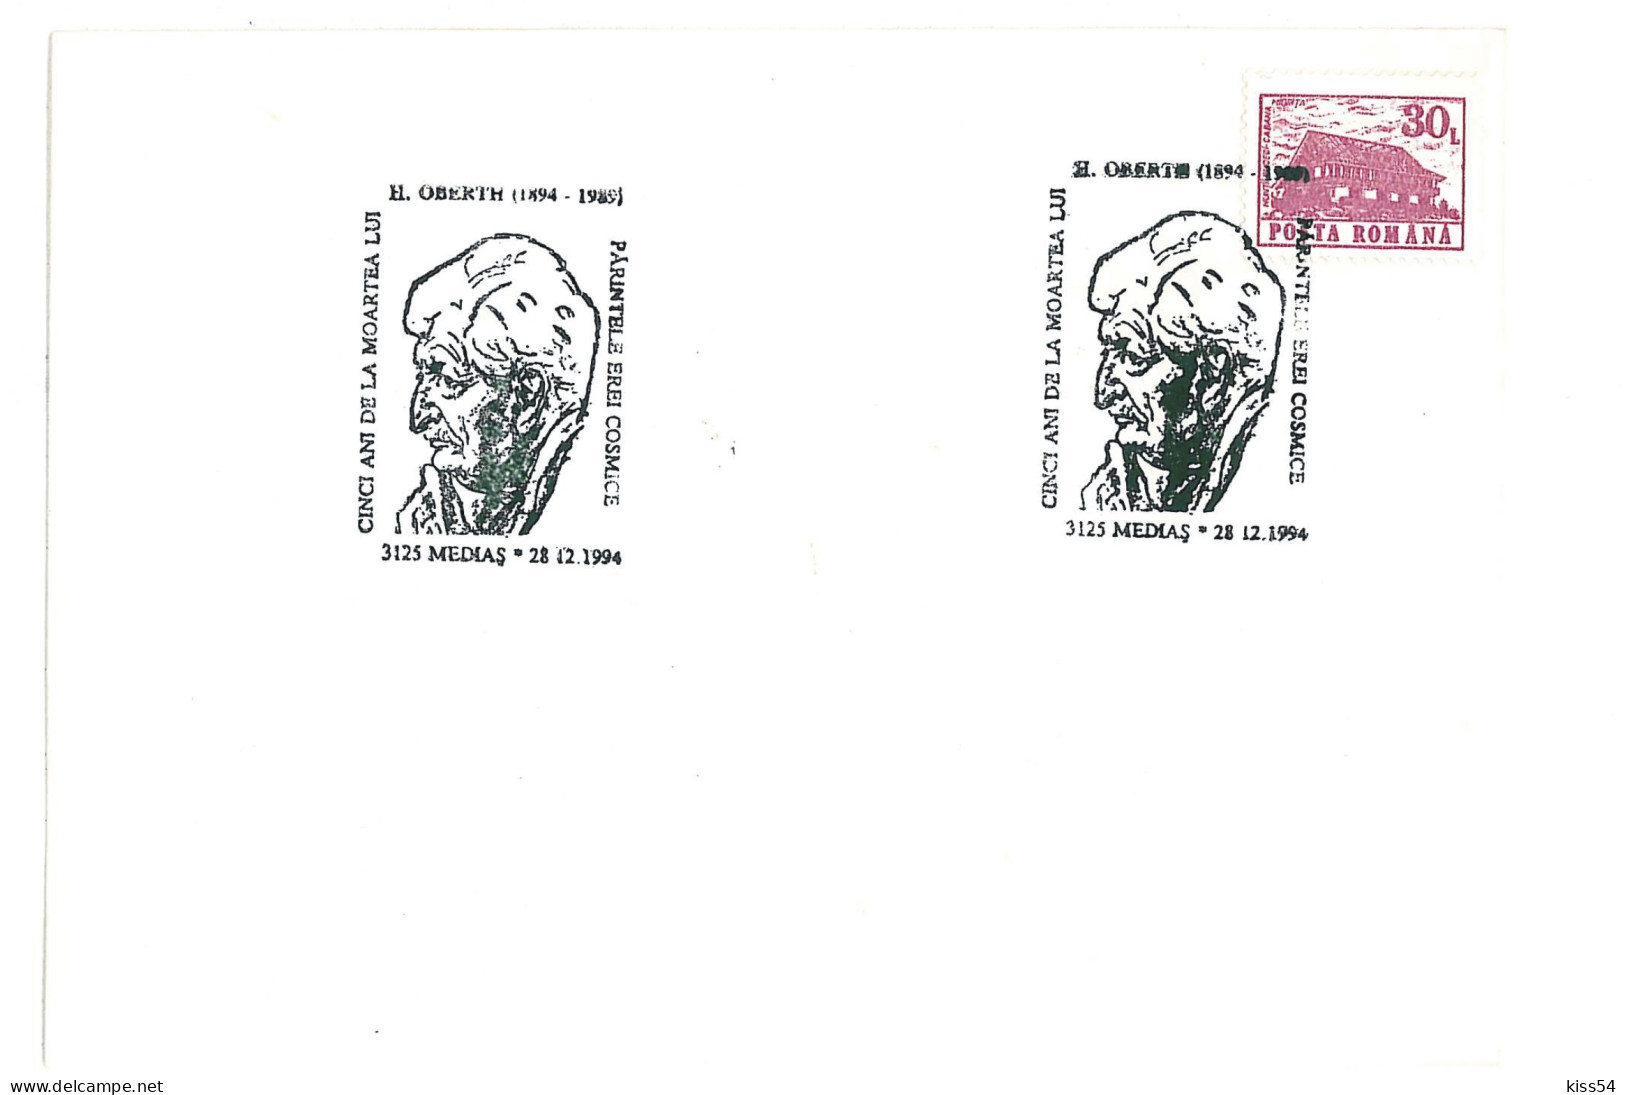 COV 35 - 2050, COSMOS, Herman OBERTH, Romania - Cover - Used - 1990 - Storia Postale